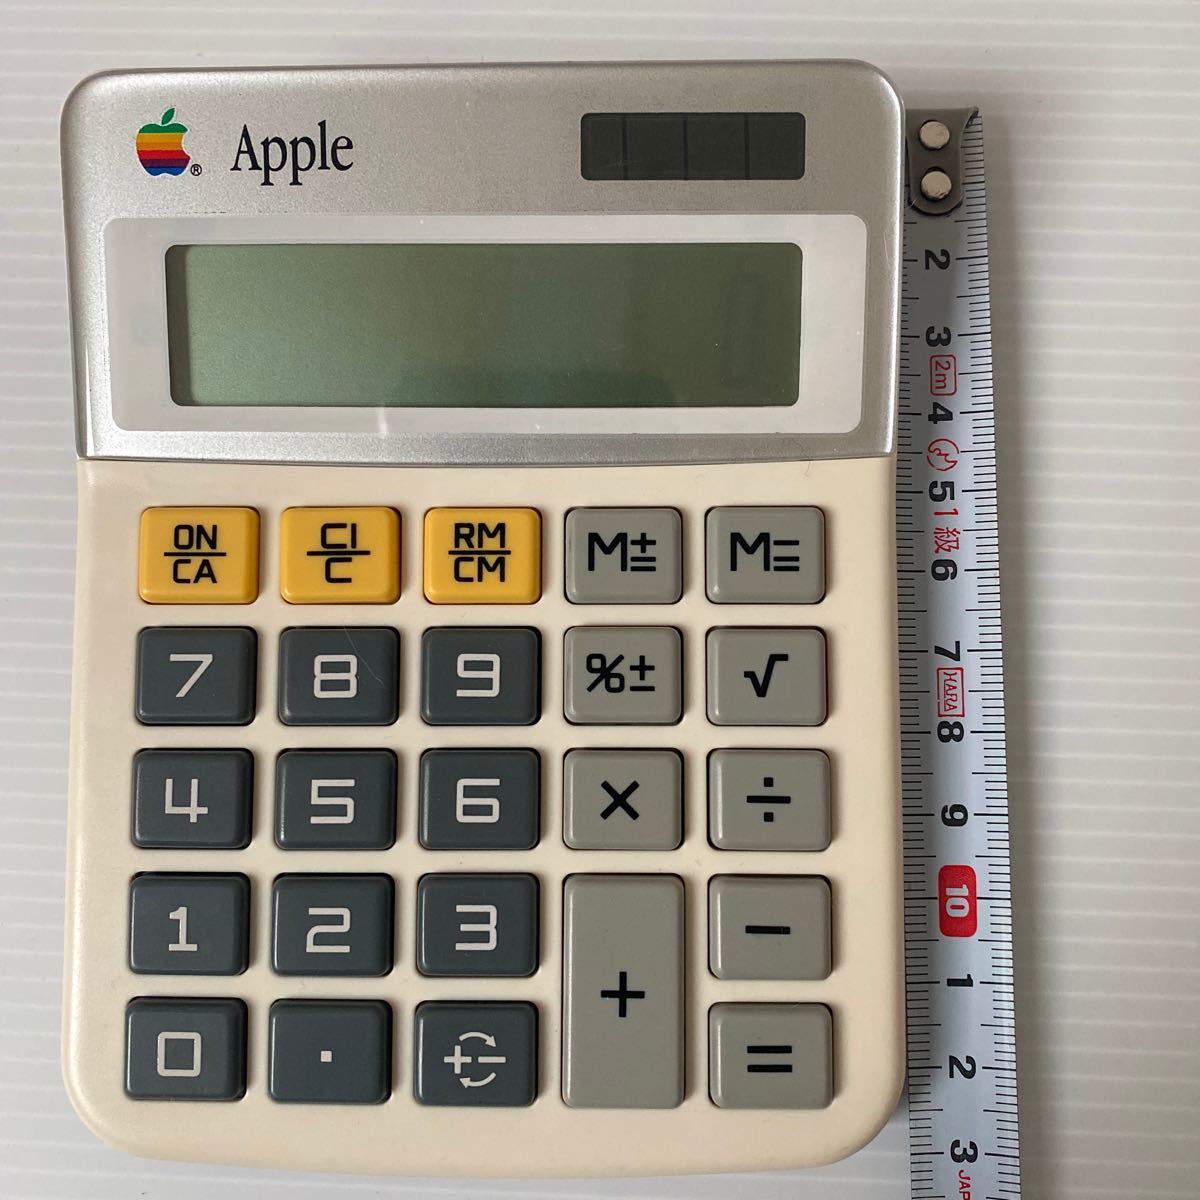 Apple canon LS-100H 計算機アップル 中古 古い物ご理解頂ける方 13×10×厚み約2cm 劇レア アップル計算機 コレクションに